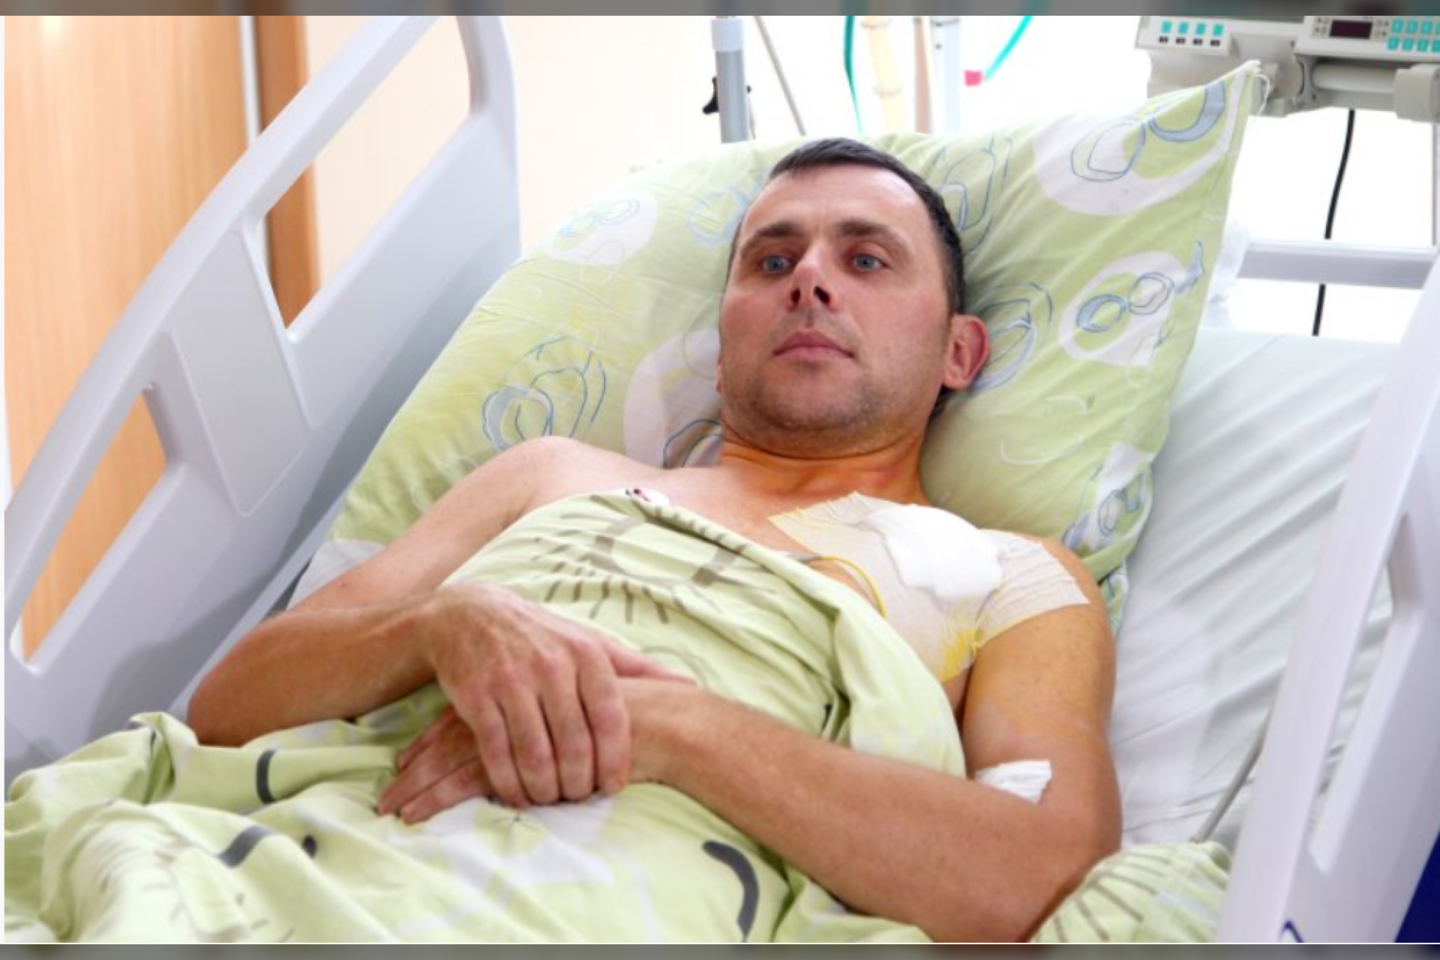  K.Adomavičiui buvo padaryta operacija ir įdėtas širdies defibriliatorius.<br> A.Švelnos/“Panskliautas“ nuotr.